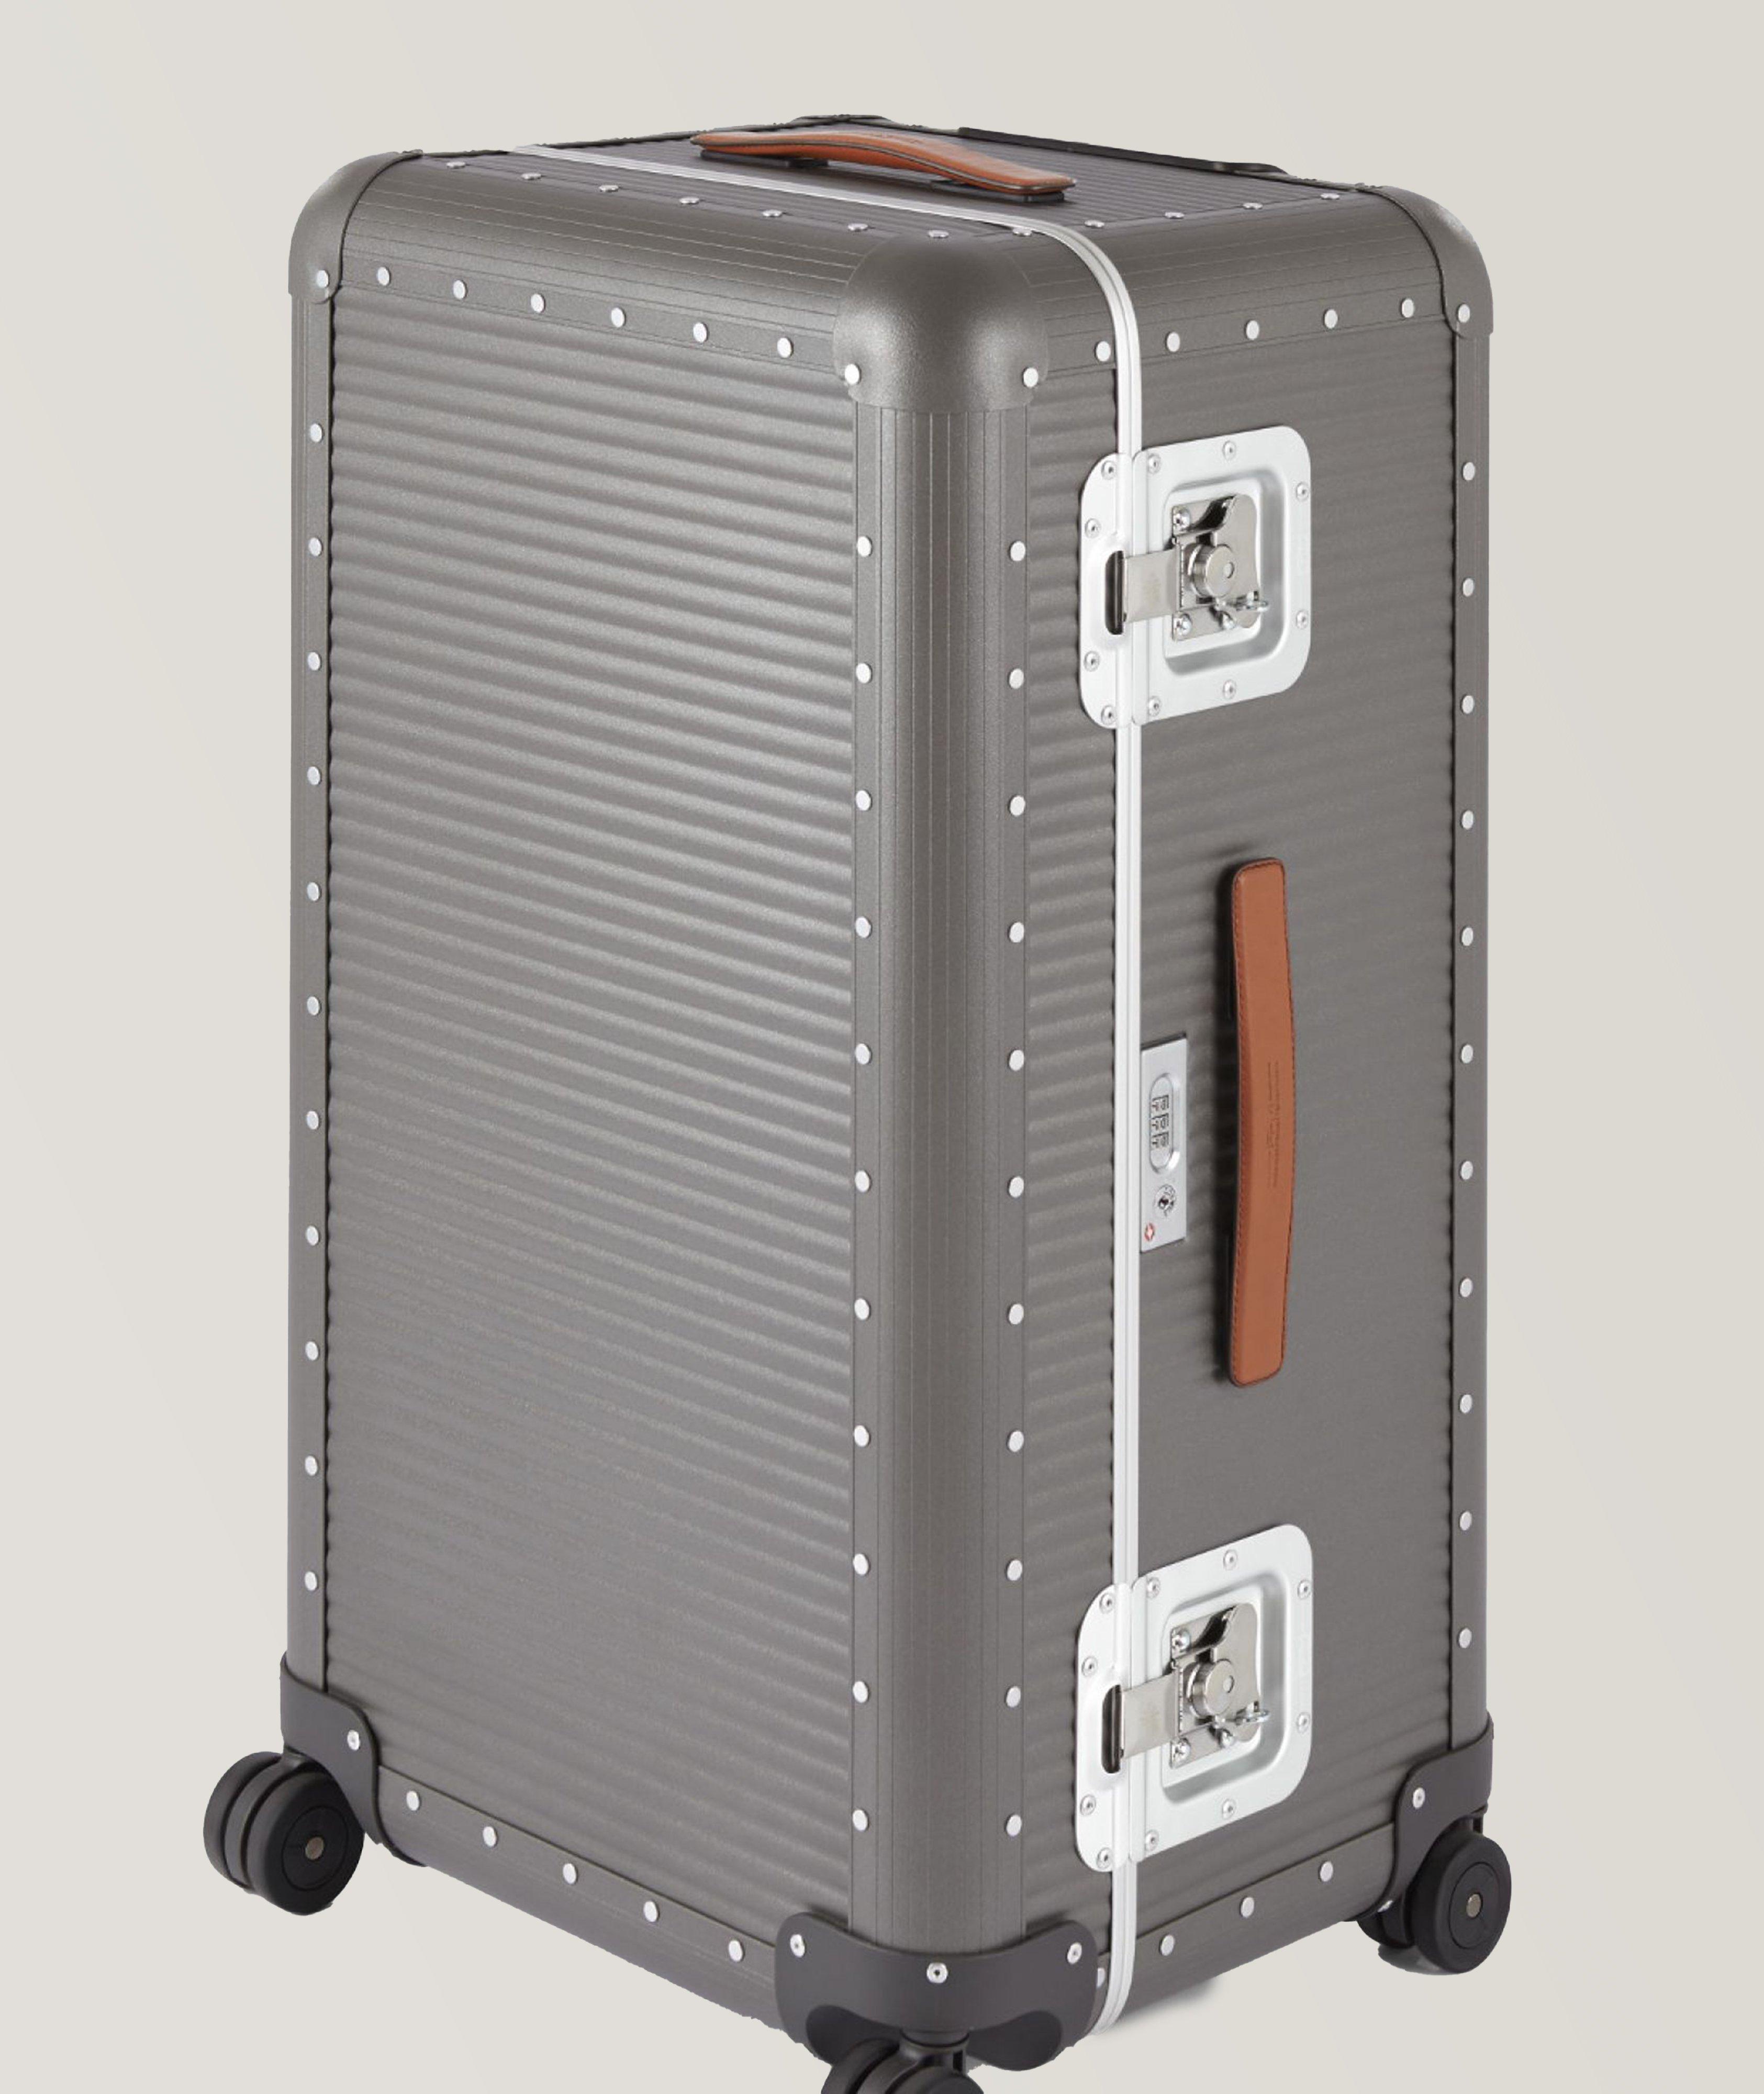 Bank Trunk On Wheels Aluminium Luggage image 1